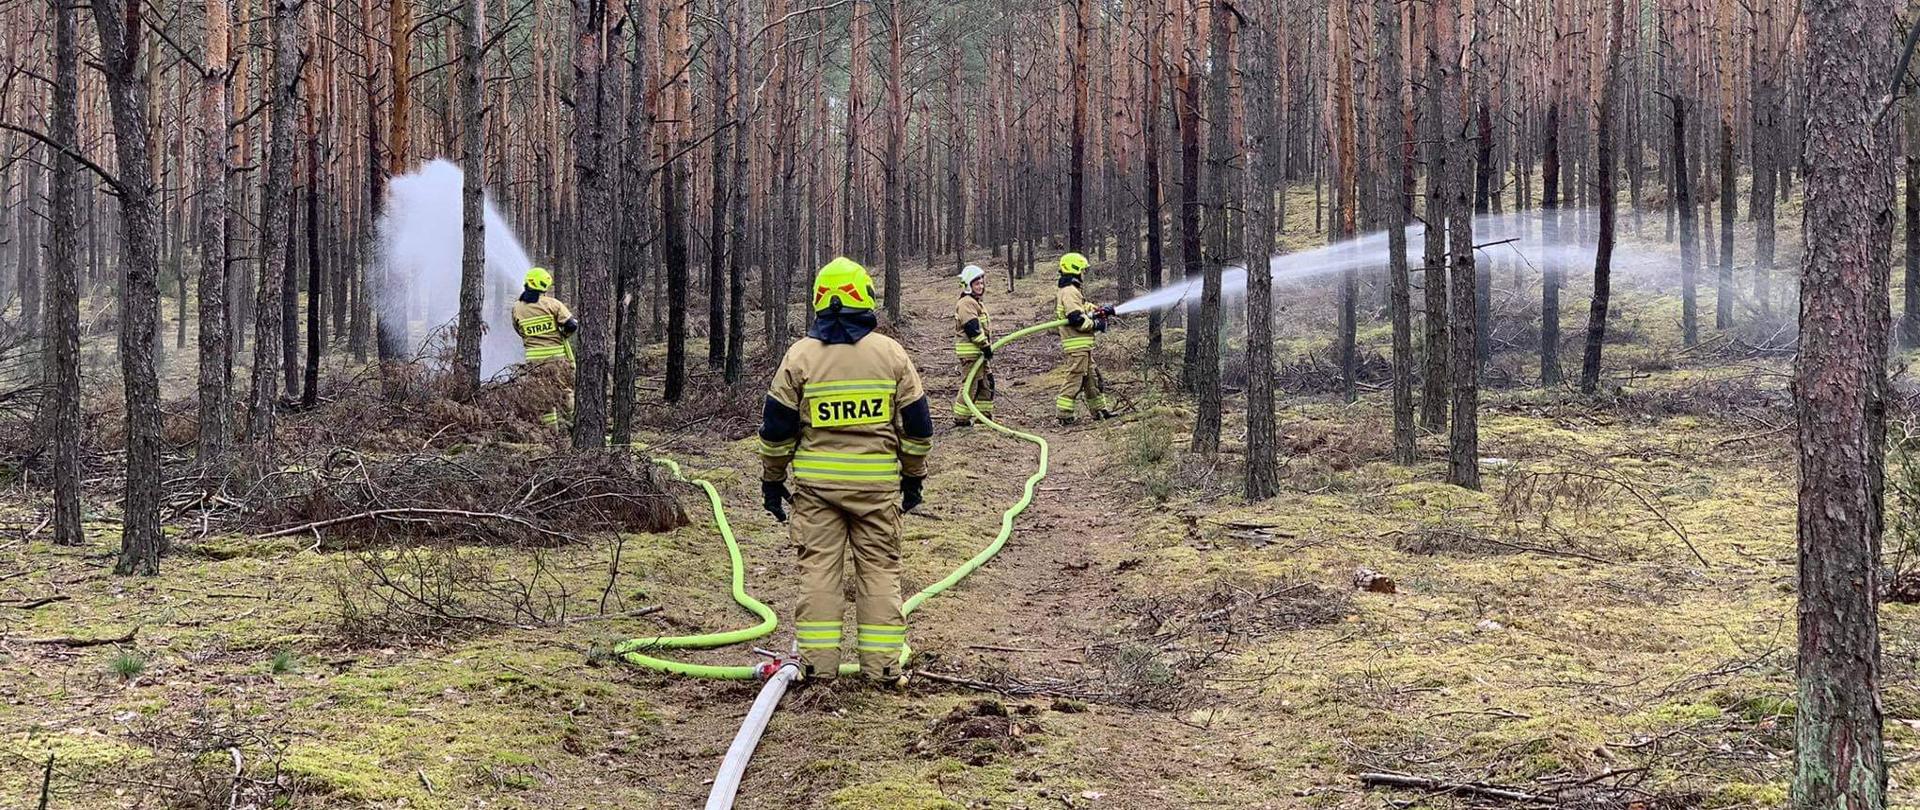 Strażacy z linią gaśnicza w lesie.